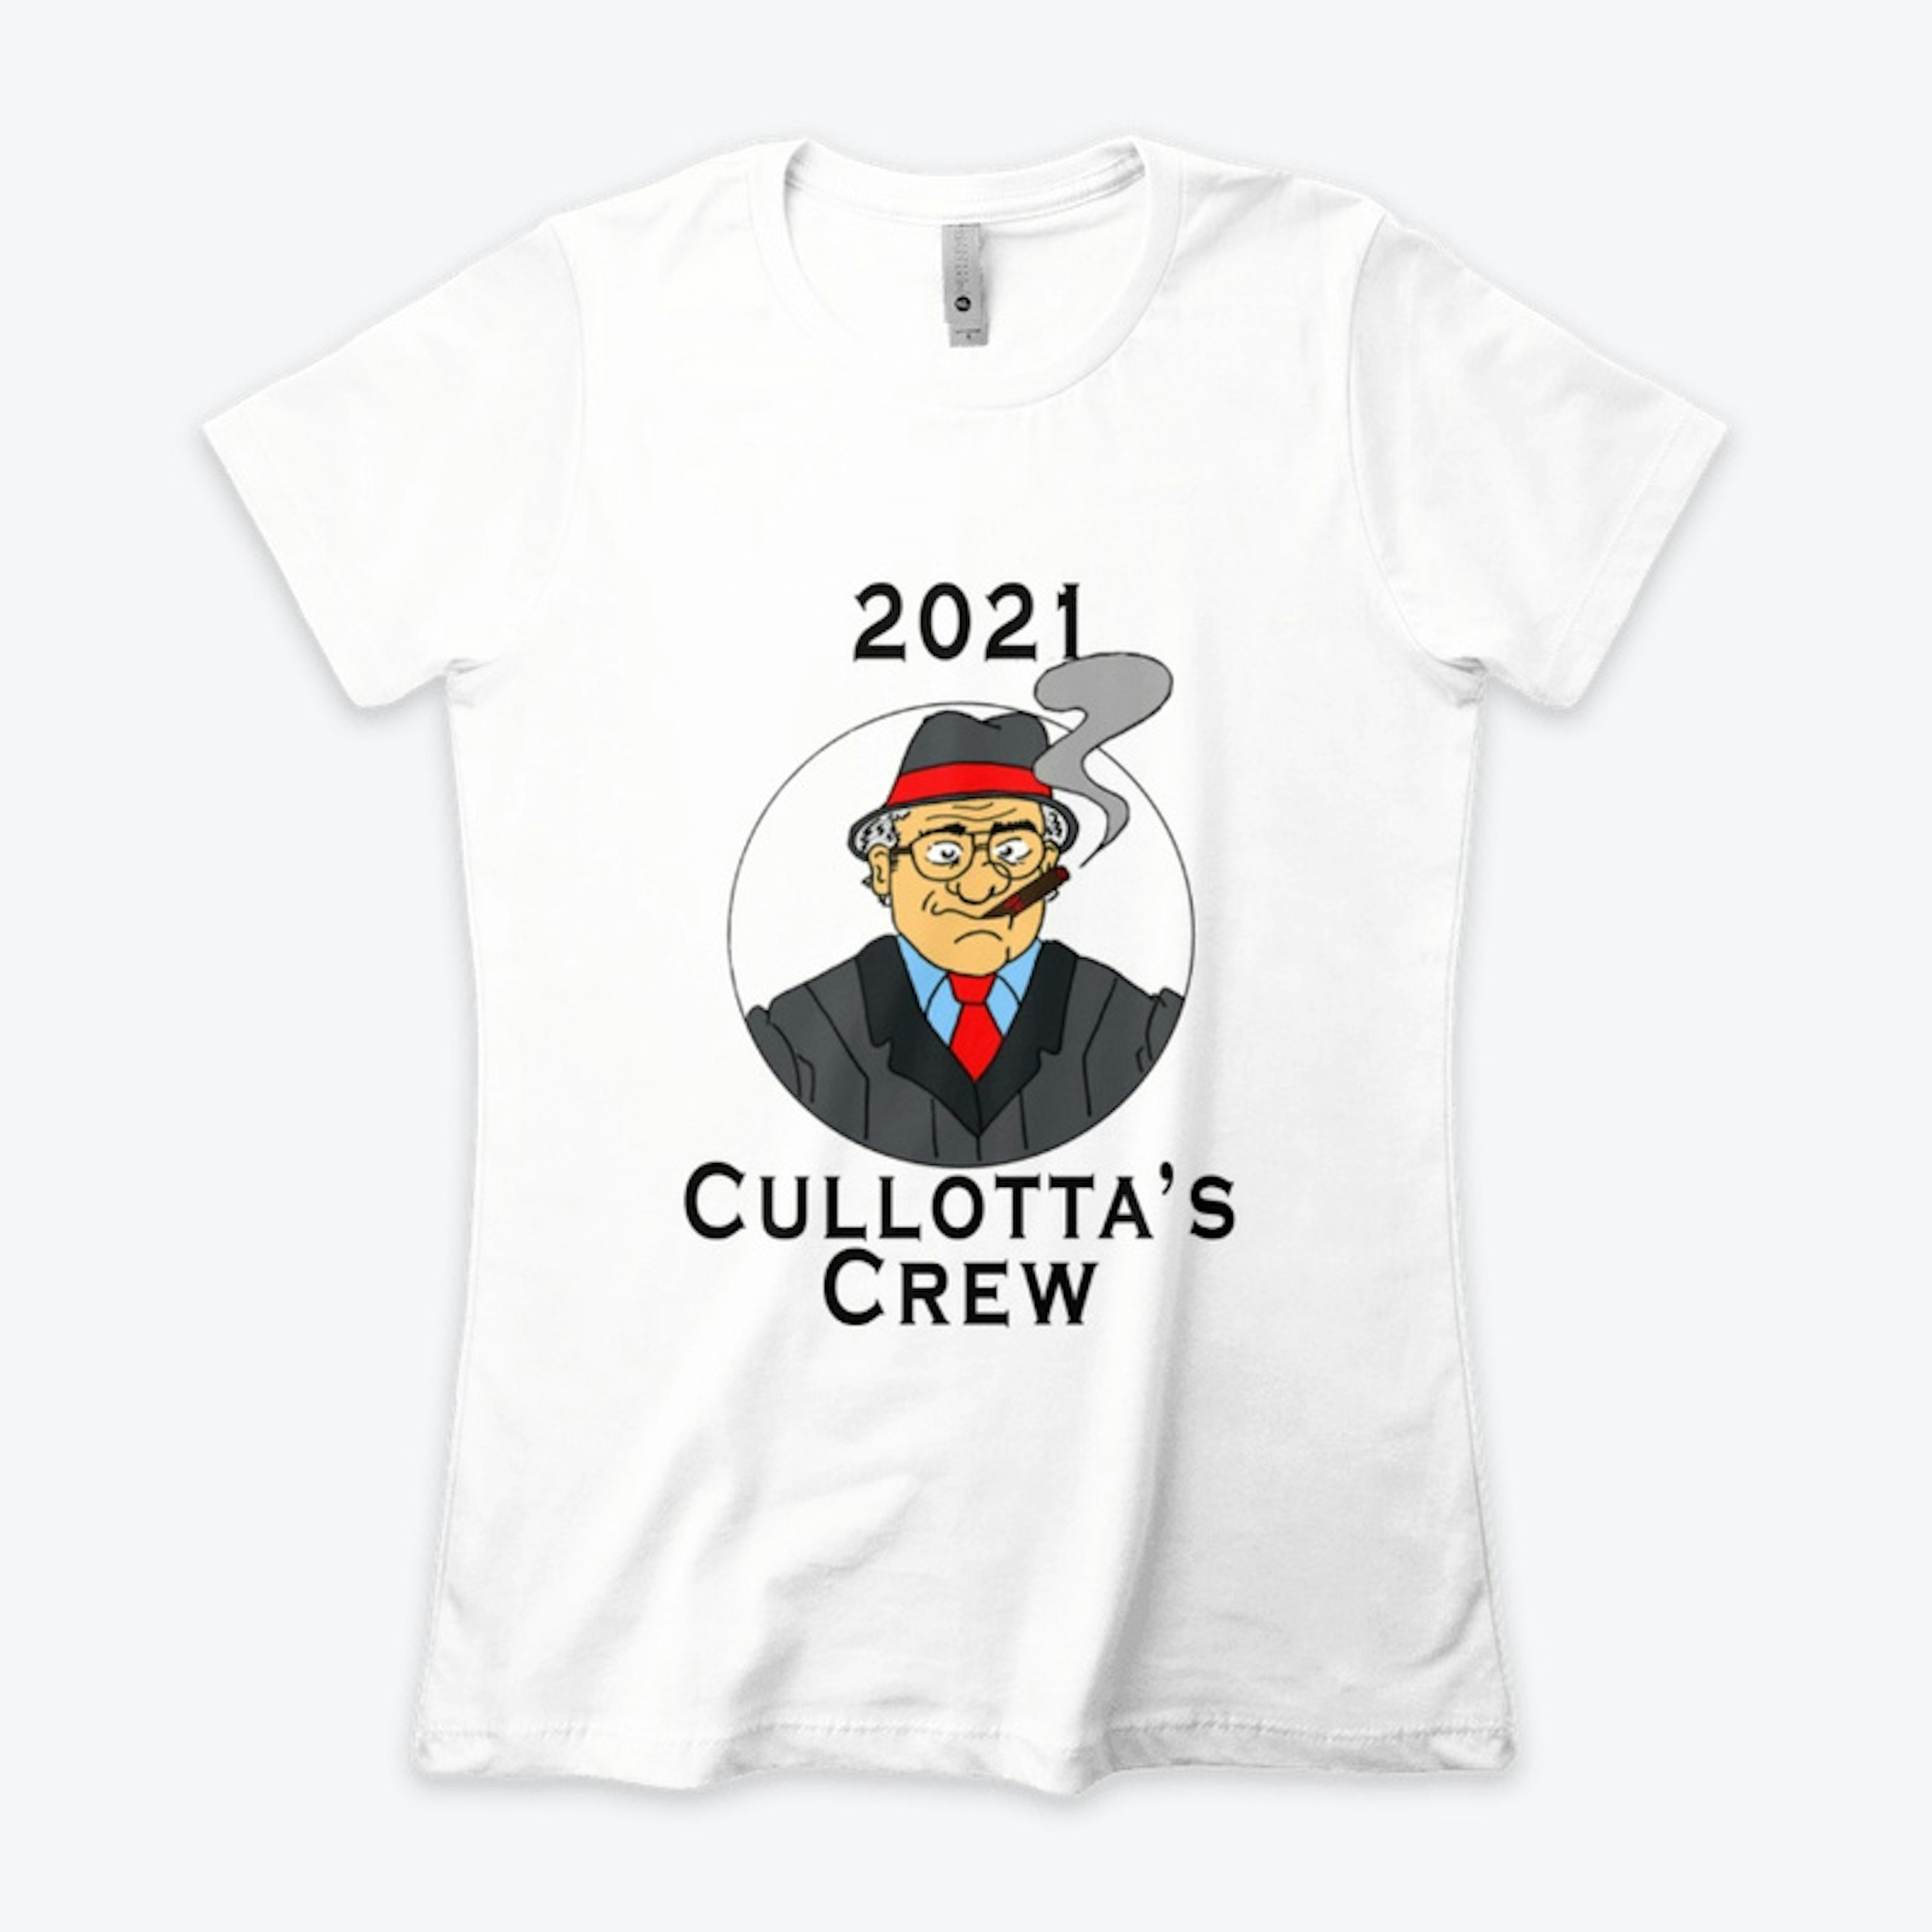 Cullotta's Crew 2021